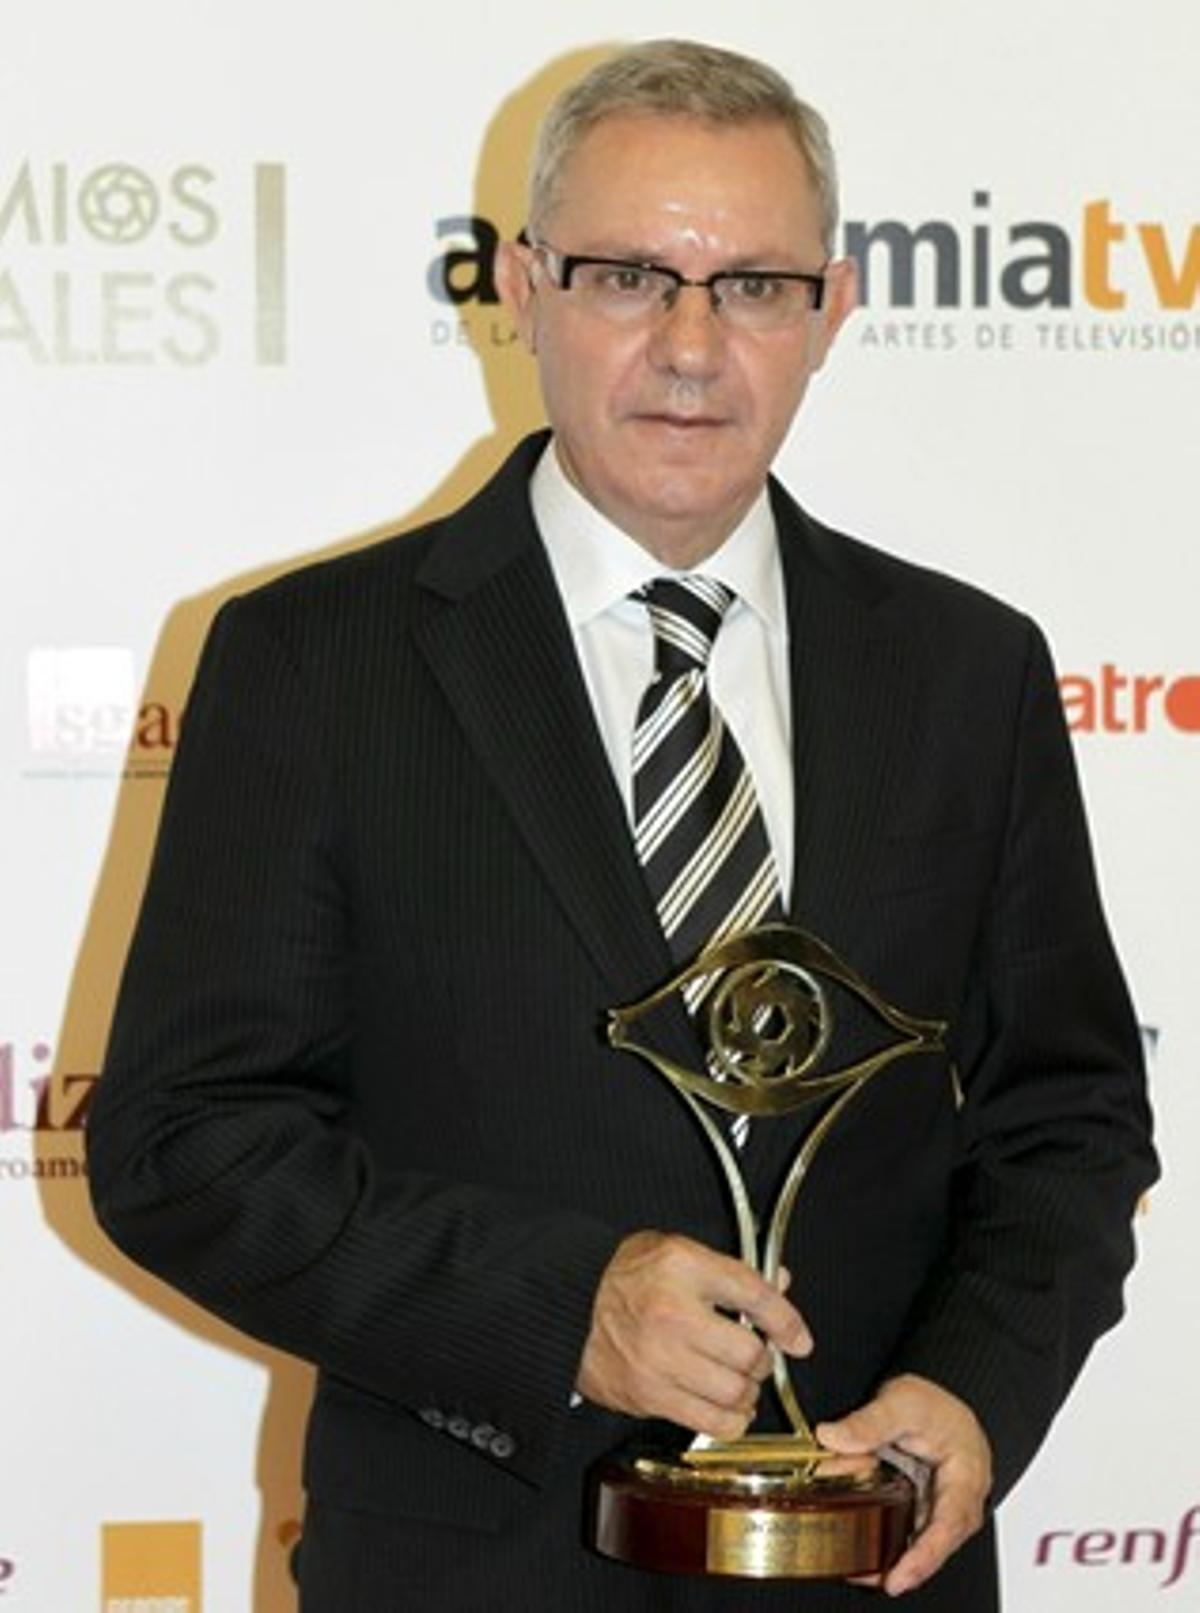 El periodista José Angel de la Casa obtuvo el reconocimiento ’Toda una vida’, por su trayectoria profesional ligada al medio televisivo.